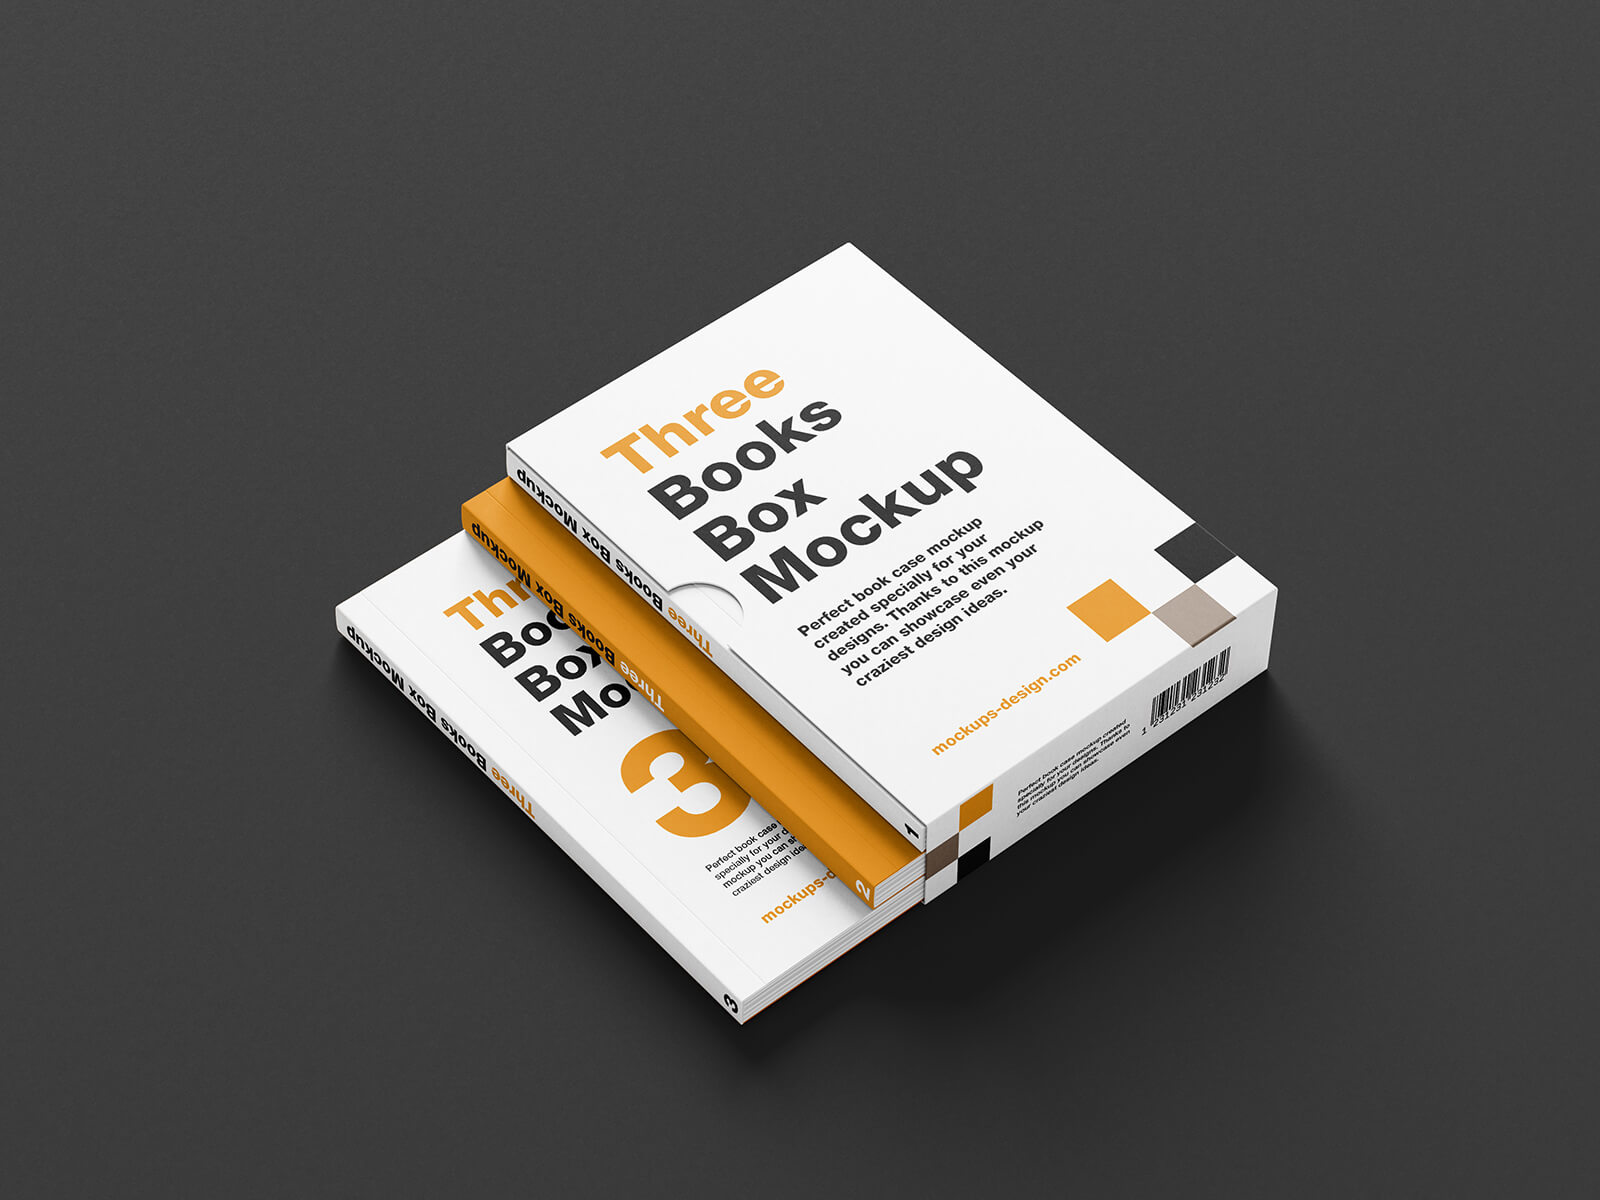 Free 3-Book Slipcase Mockup PSD